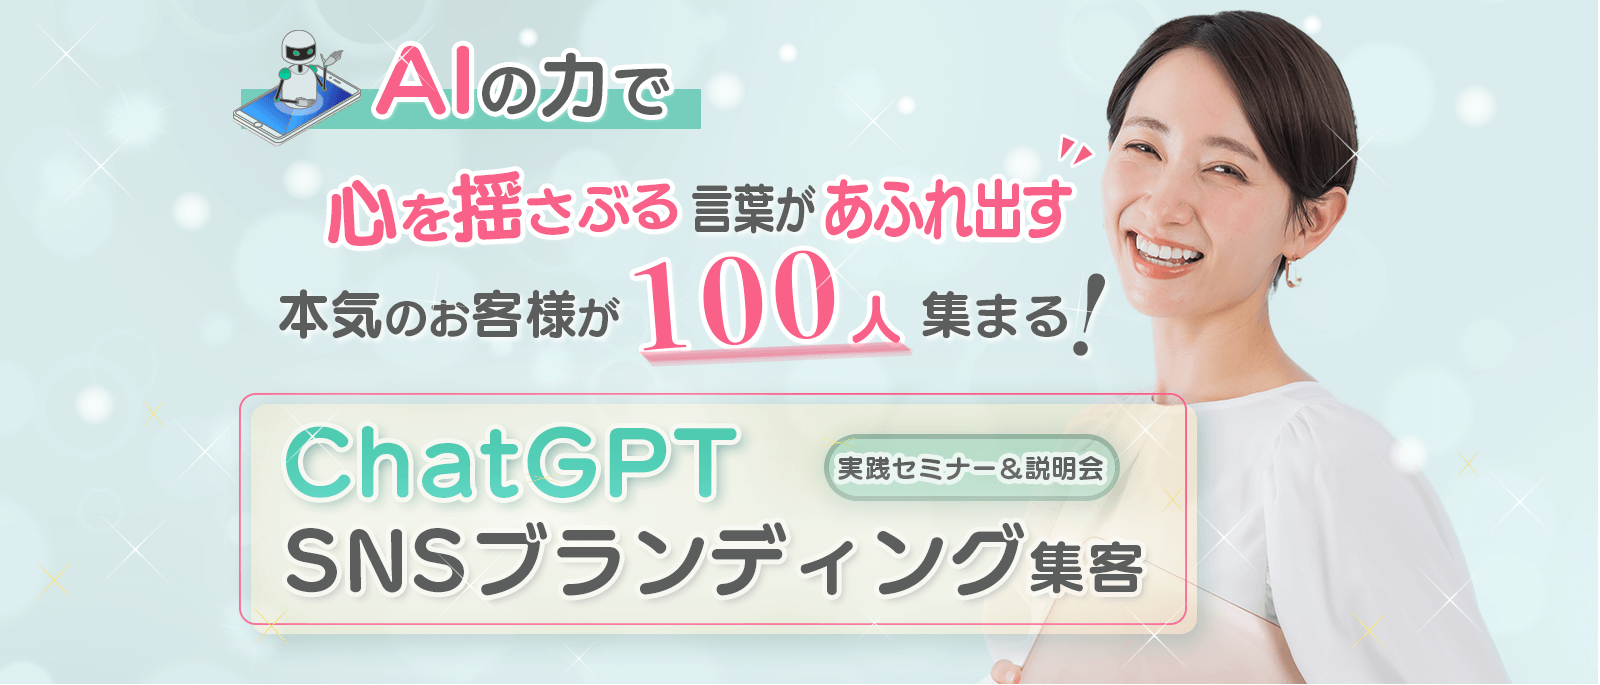 【特別無料】ChatGPTおまかせ集客 実践セミナー&説明会【af101 